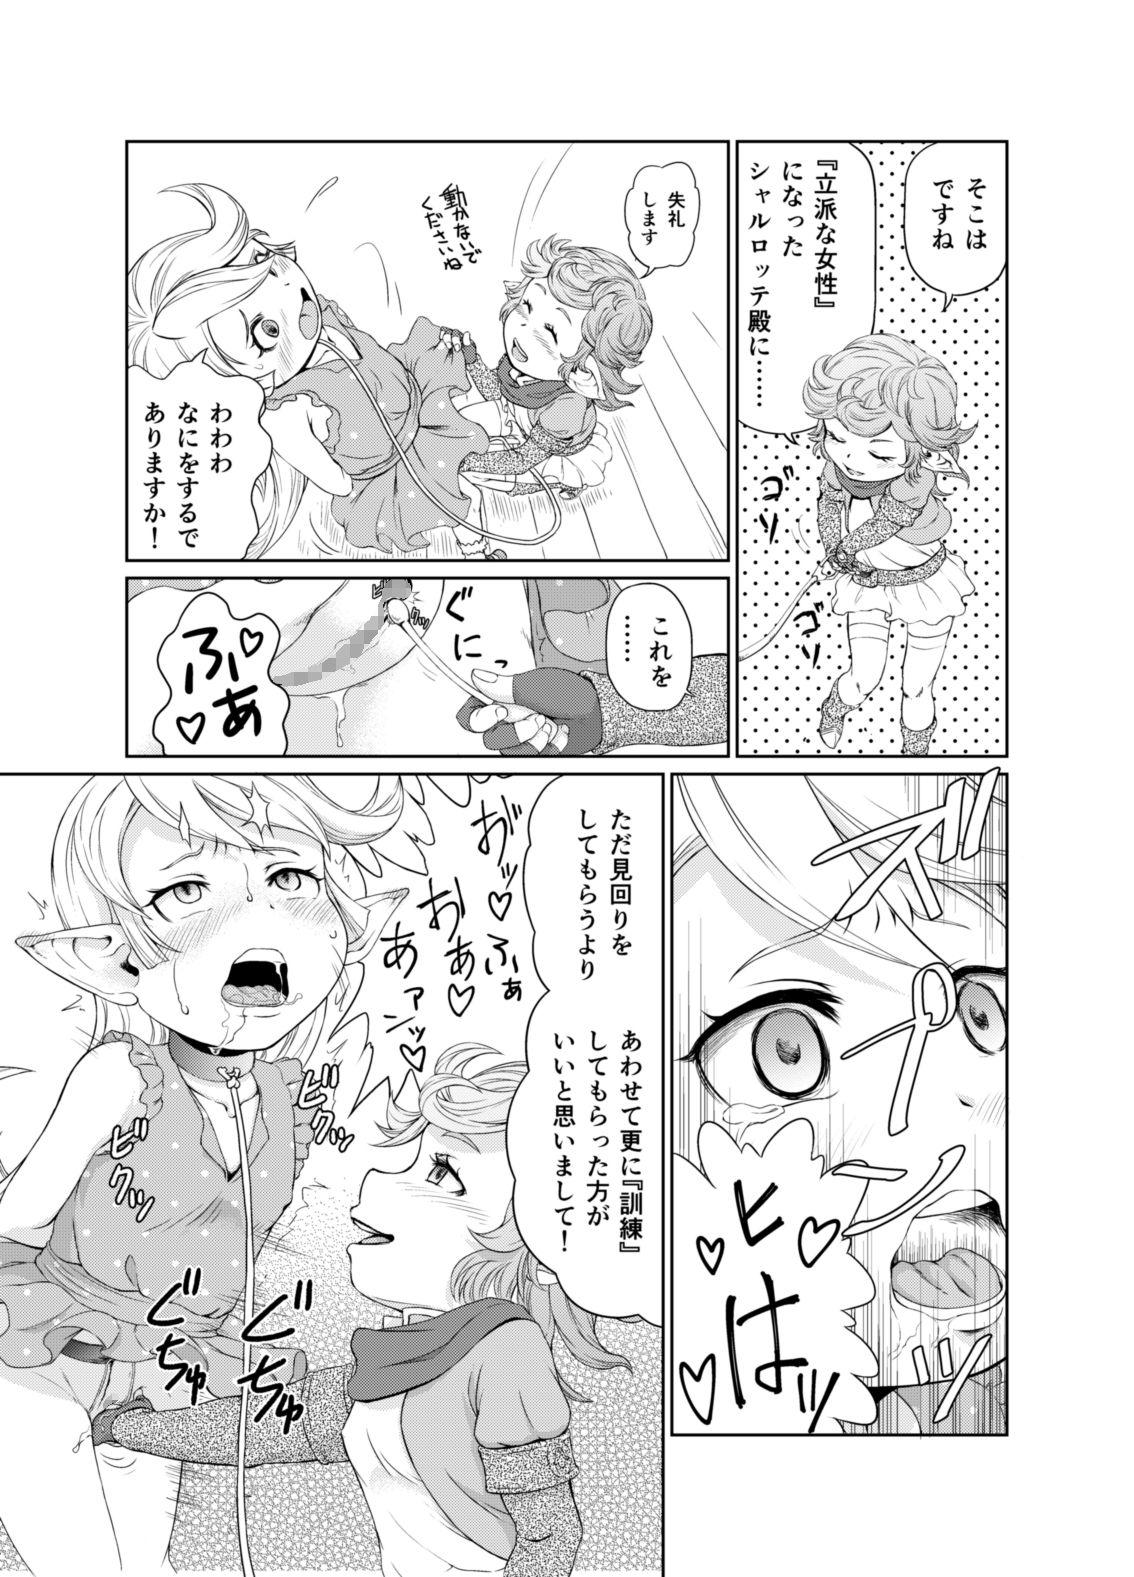 Bare Sora no soko 3 sharu 〇 Tte no baai yagai chōkyō-hen - Granblue fantasy Chick - Page 10